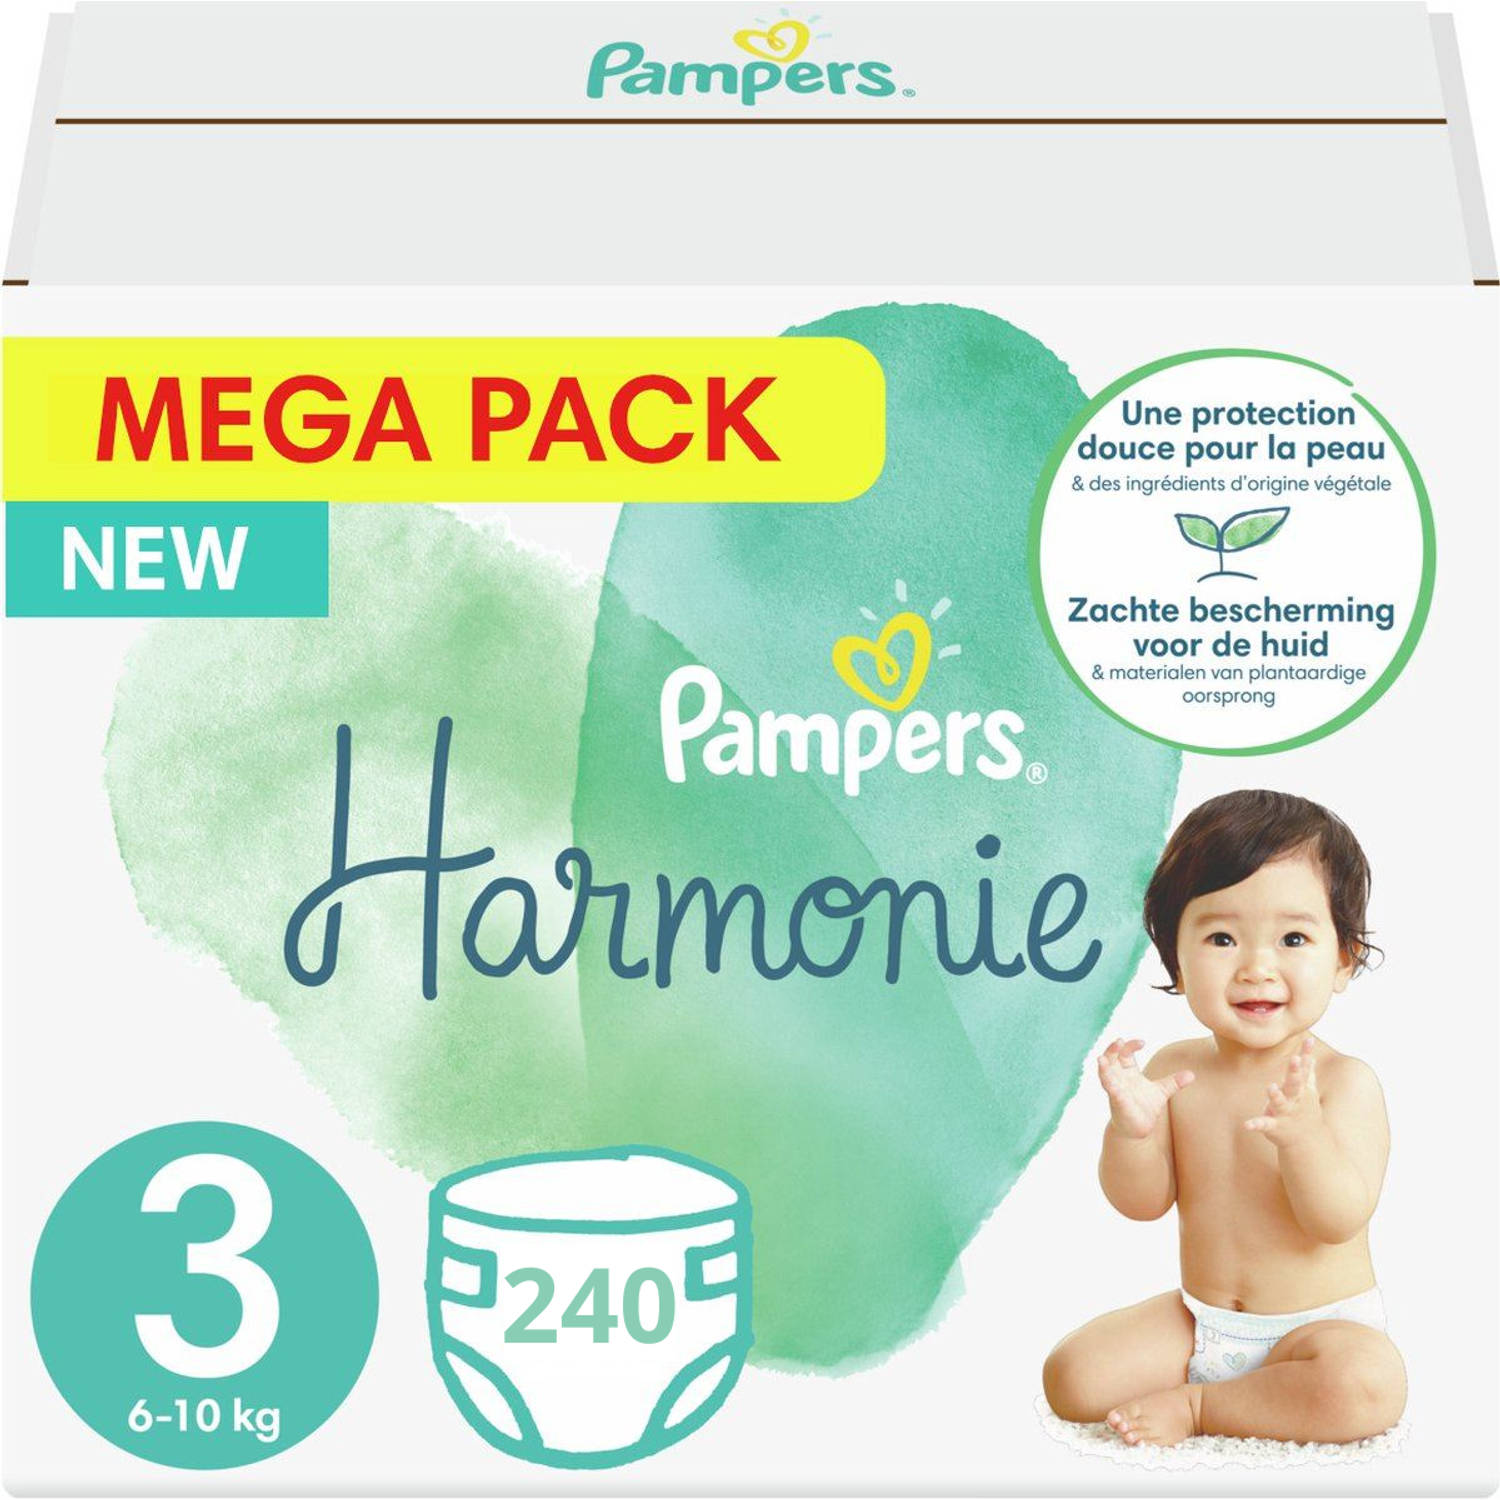 Pampers Harmonie / Pure maat 3 (6-10KG) - 240 stuks - Met 0% parfum - Voordeelverpakking